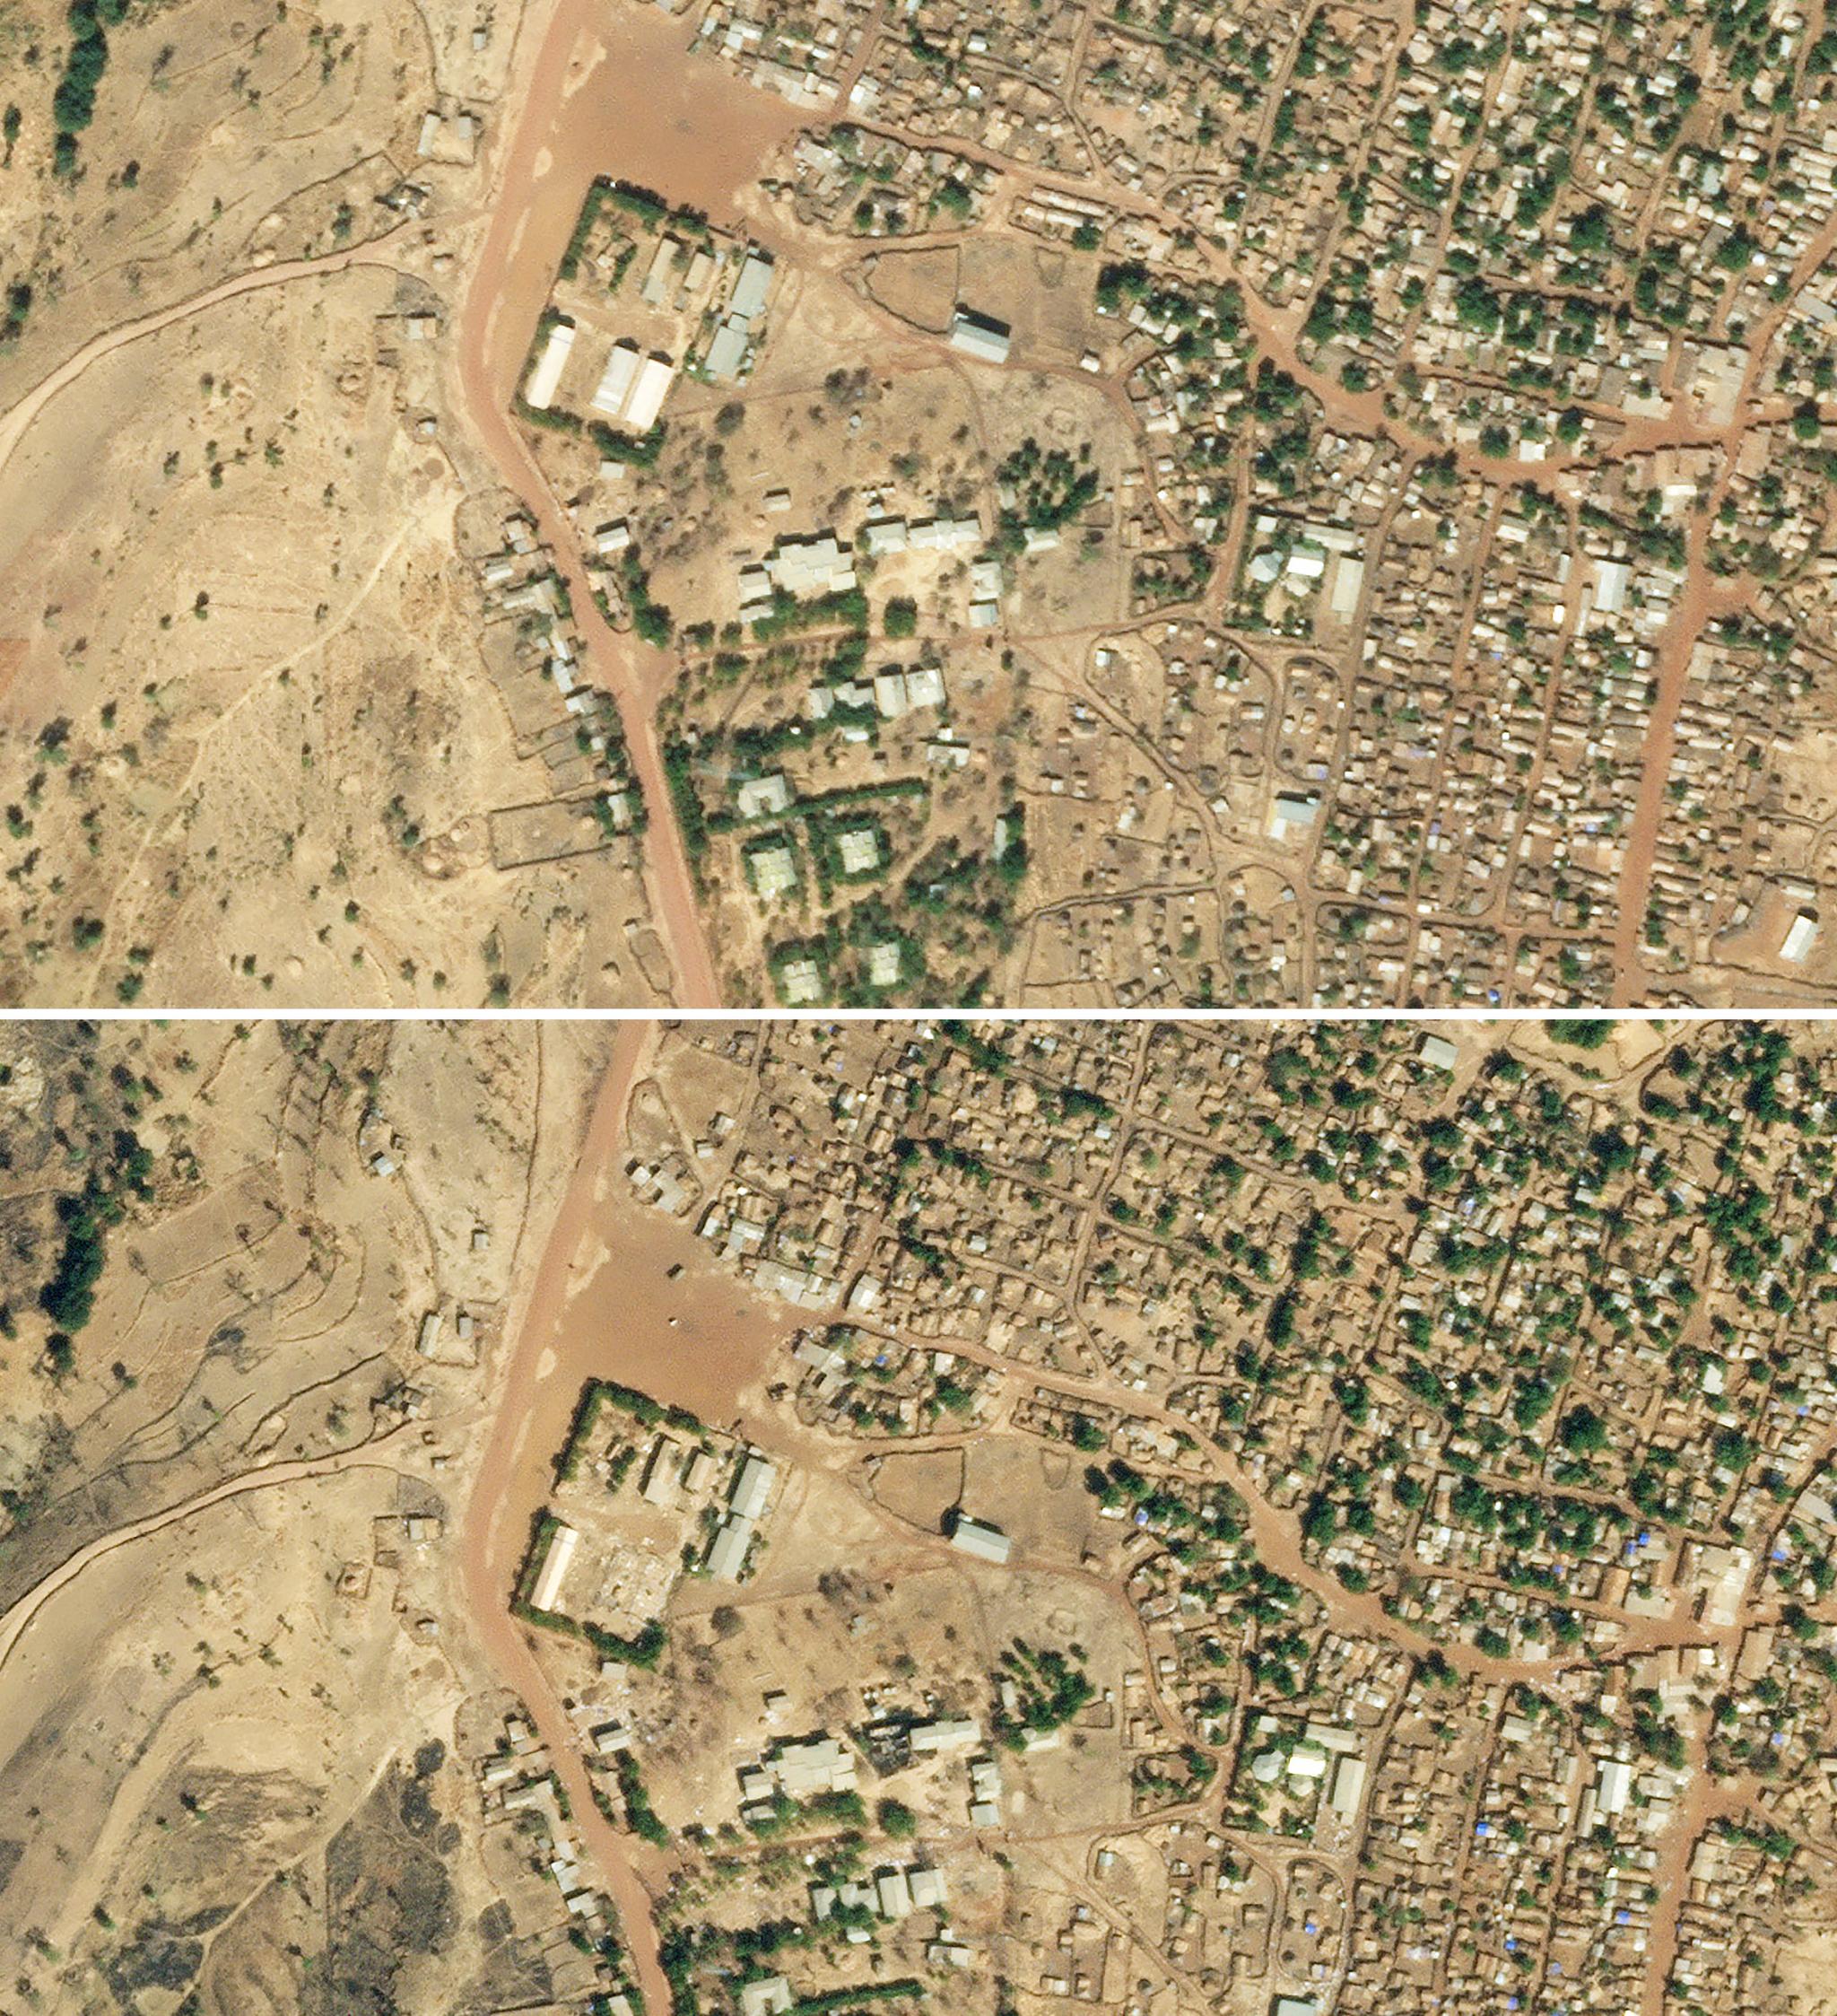 Satellittbildene viser ødeleggelsene av et av varehusene til FNs matprogram den 5. januar. Lageret ligger i flyktningleiren Shimelba i Tigray. Det øverste bildet viser lageret før ødeleggelsene, det nederste viser skadene i etterkant. 